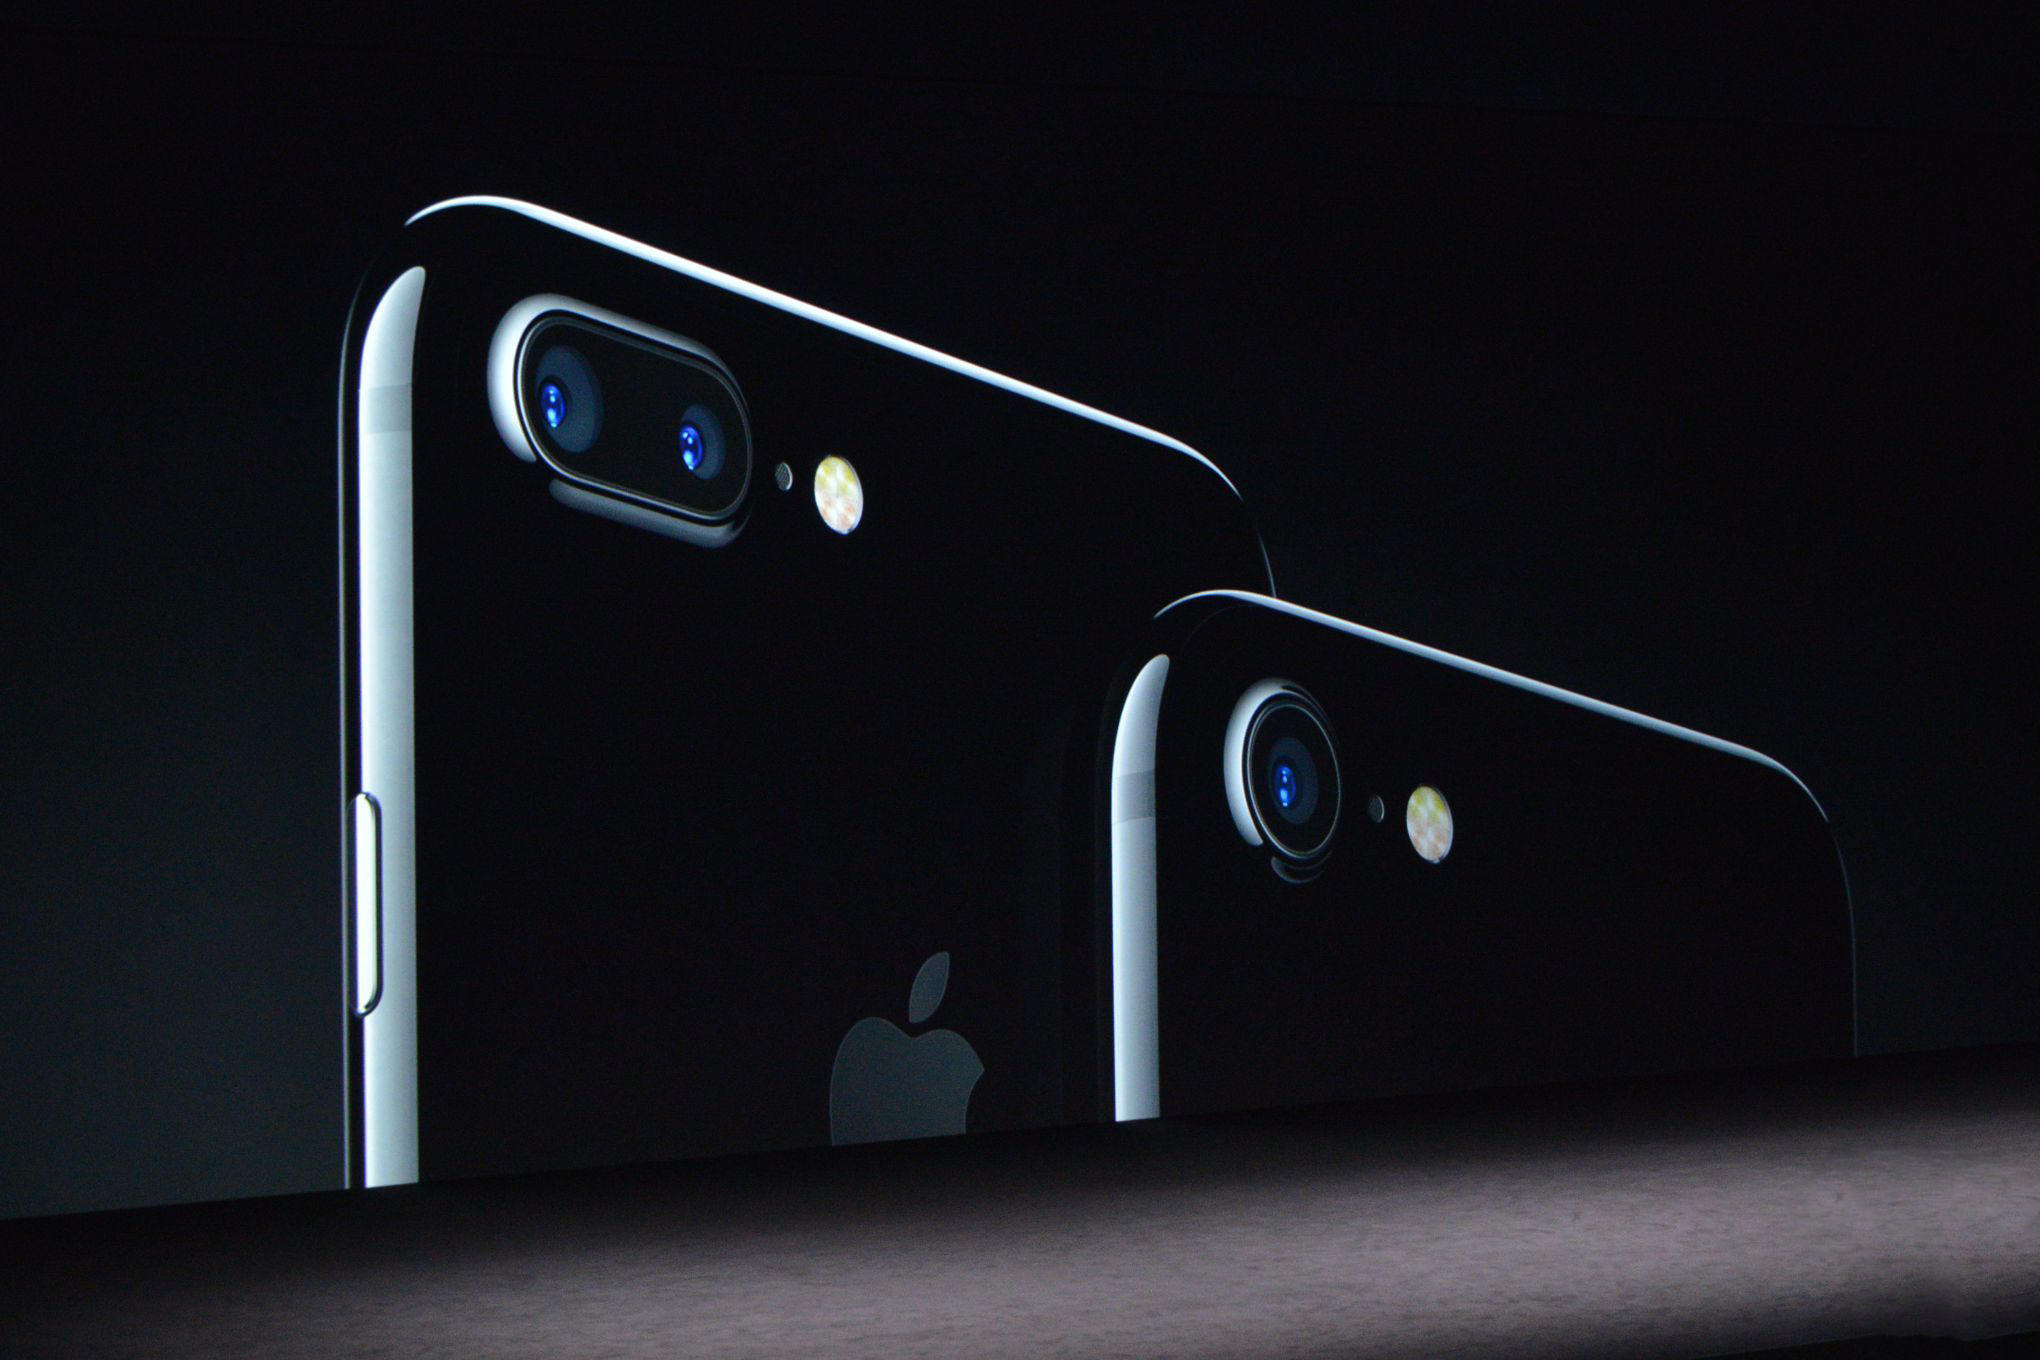 iPhone 7Plus拍照什么样?拍出单反效果 - 科技